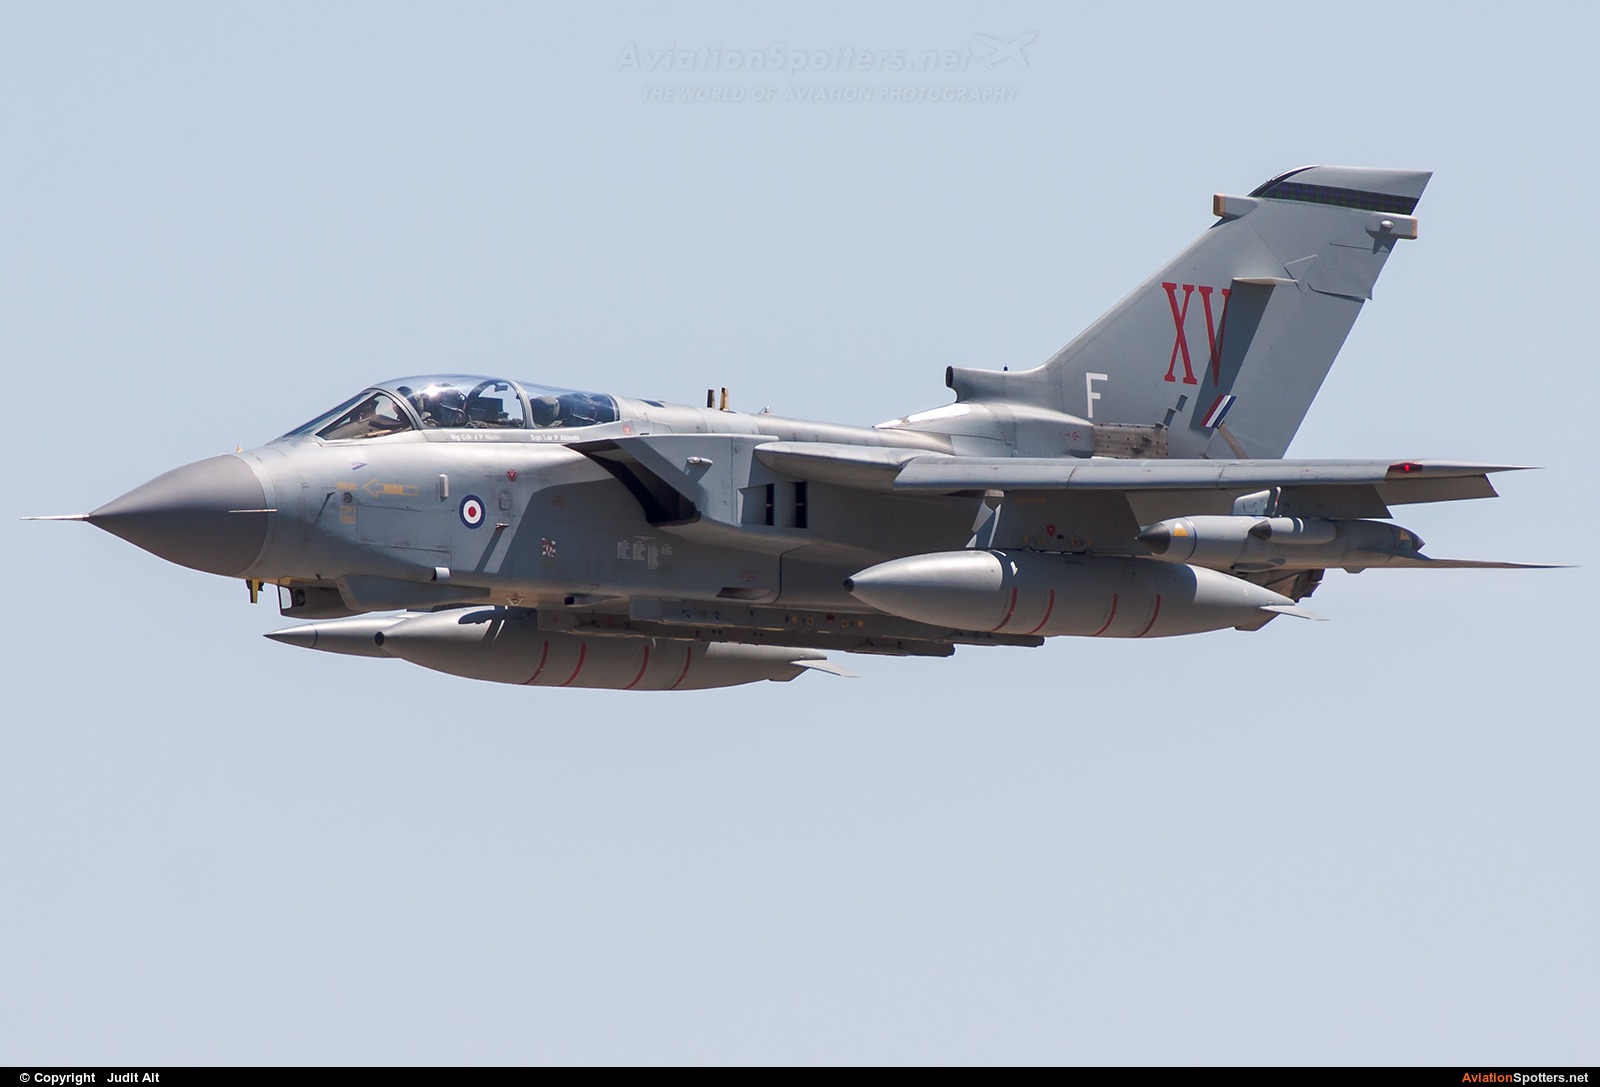 UK - Air Force  -  Tornado GR.4 - 4A  (ZA-602) By Judit Alt (Judit)